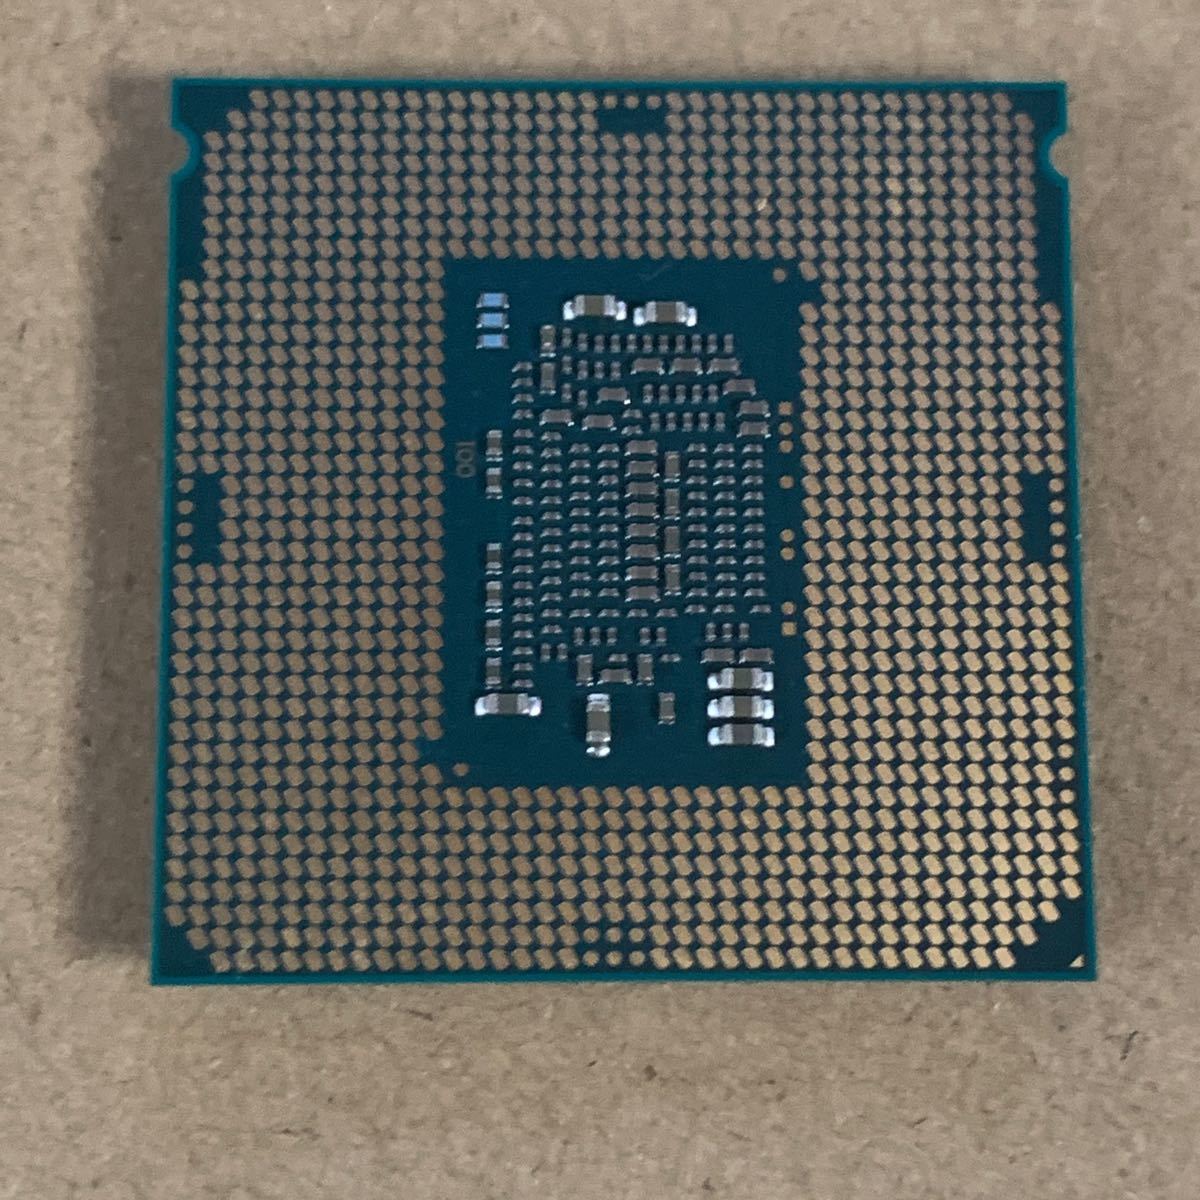 Aap anders gevangenis Intel Core i5-6500 動作確認済み LGA1151 Skylake世代 付属品なし geocoach.co.jp